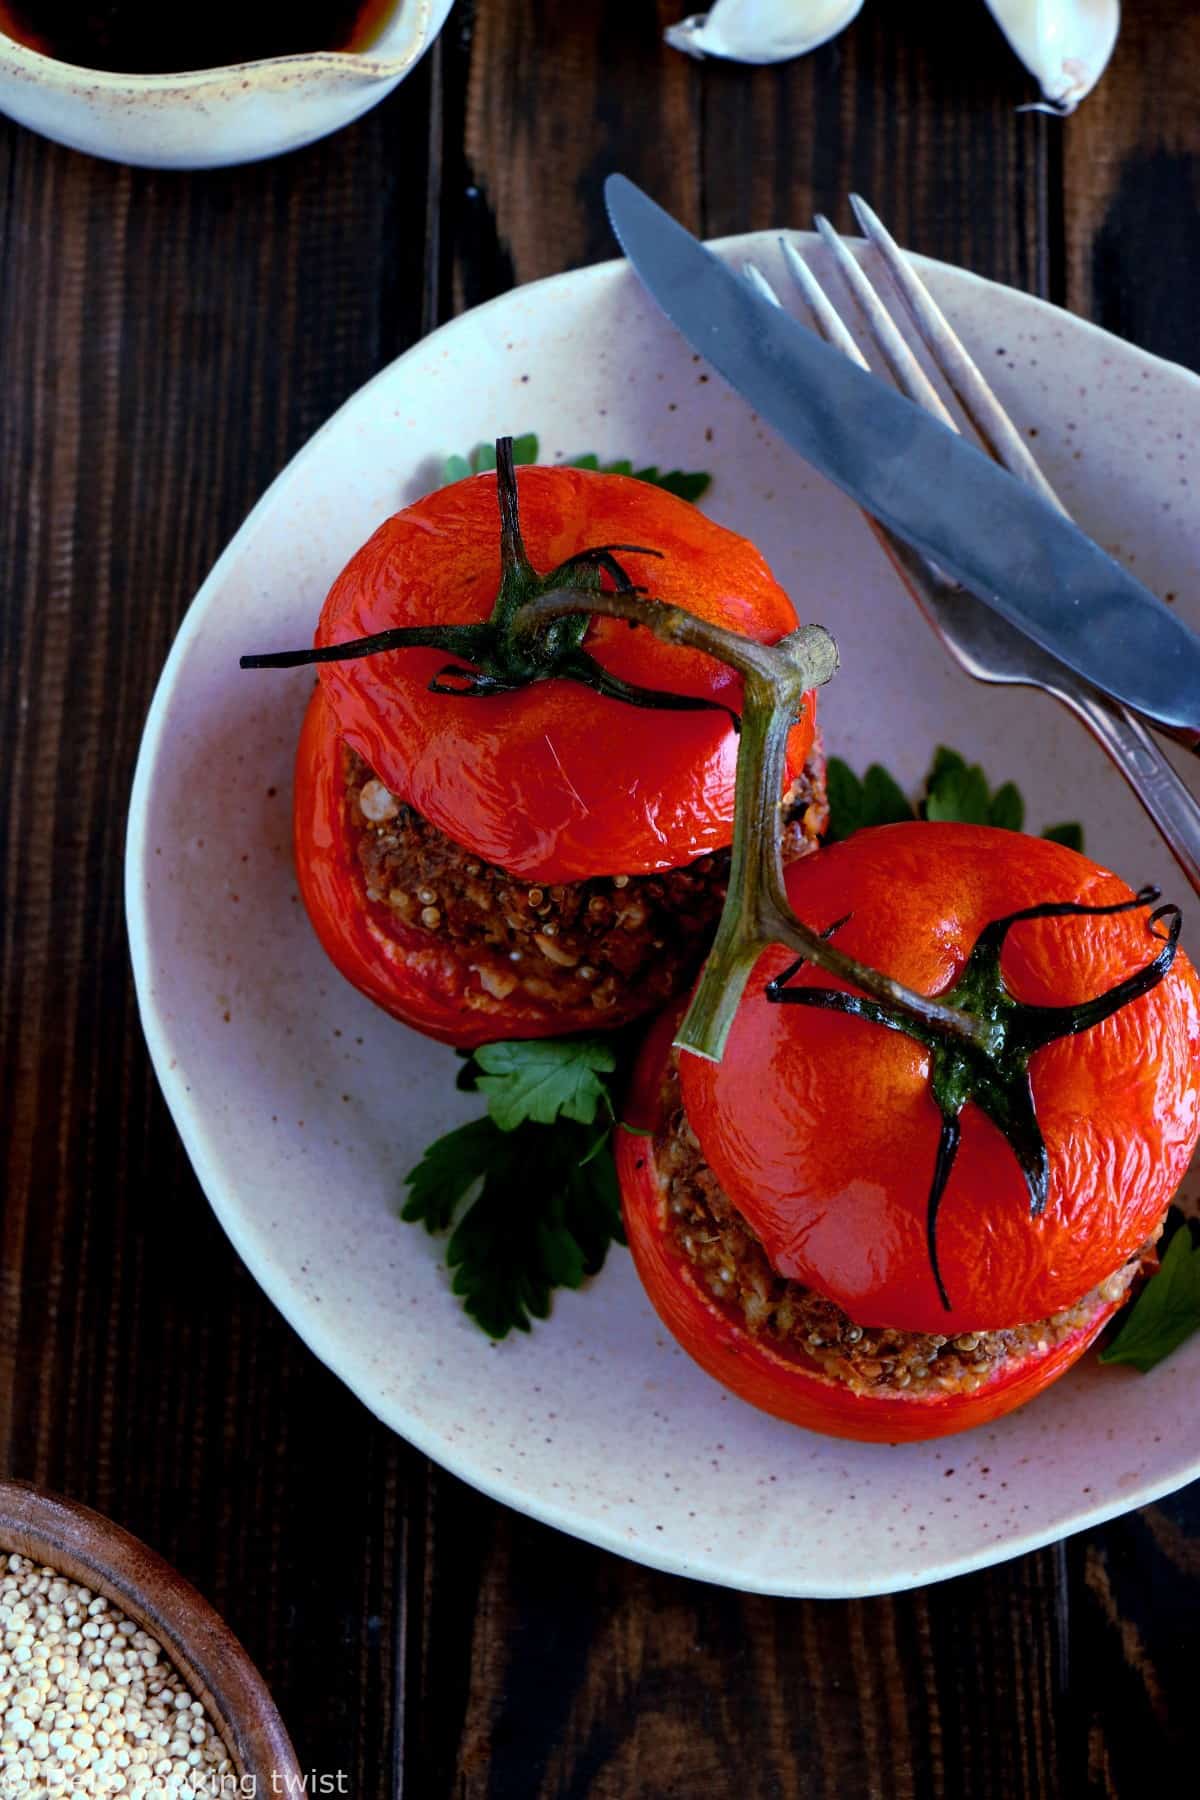 Délicieuses tomates farcies en version vegan, avec des pois chiches, du quinoa et des tomates séchées. Le résultat ? Des tomates juteuses, une farce aux saveurs méditerranéennes et un plat à la fois sain, nourrissant et complet.